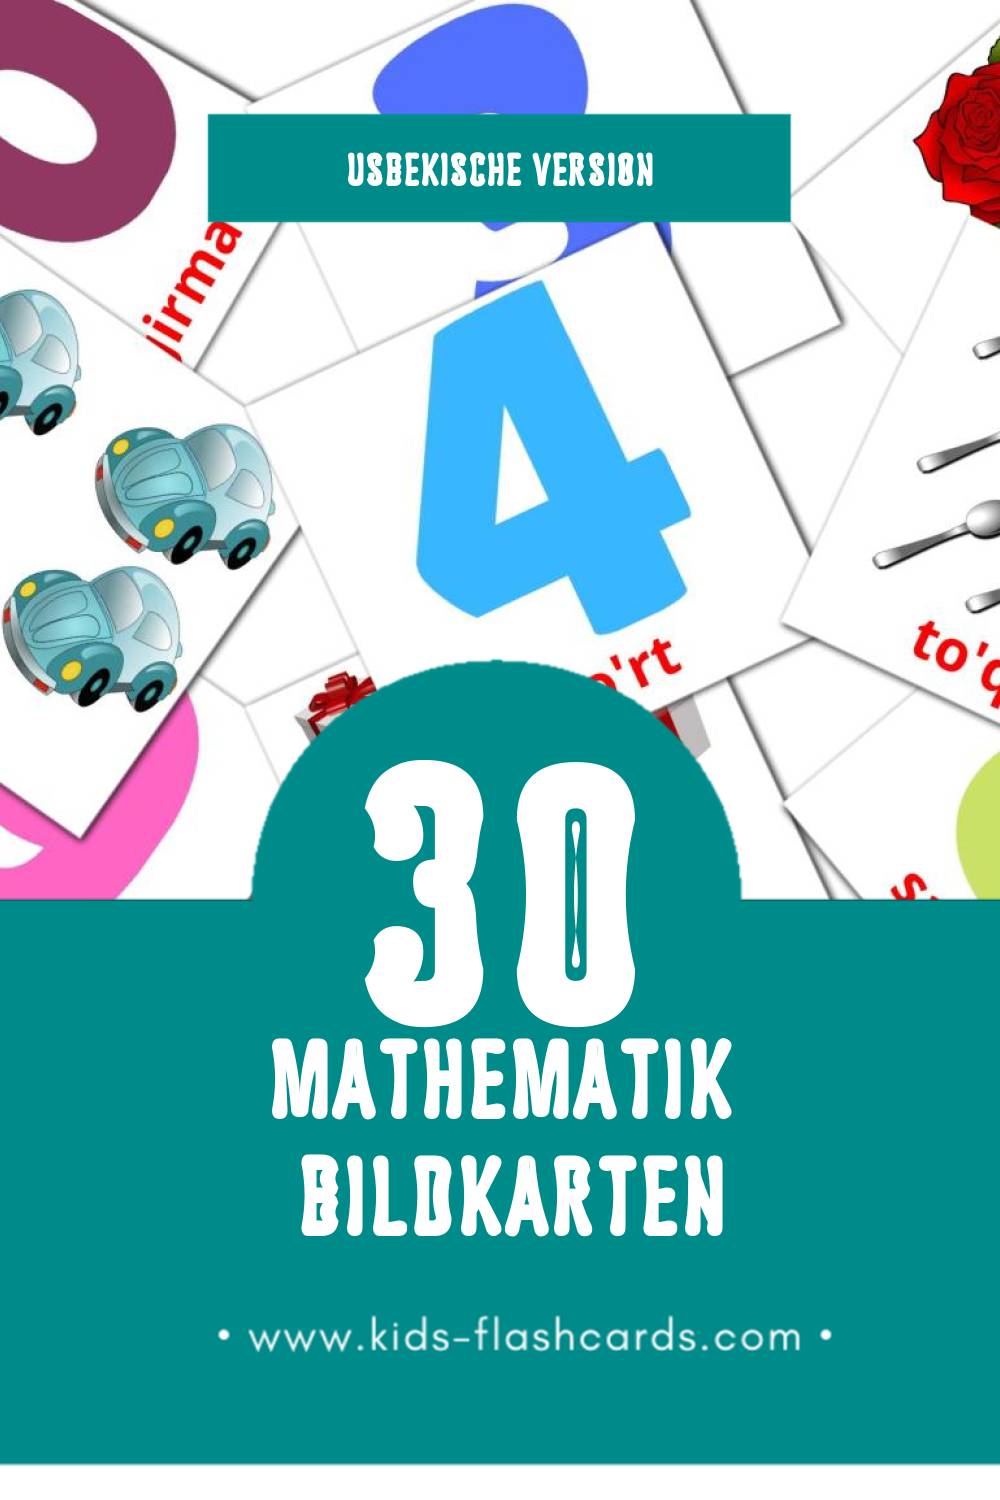 Visual Matematika Flashcards für Kleinkinder (30 Karten in Usbekisch)